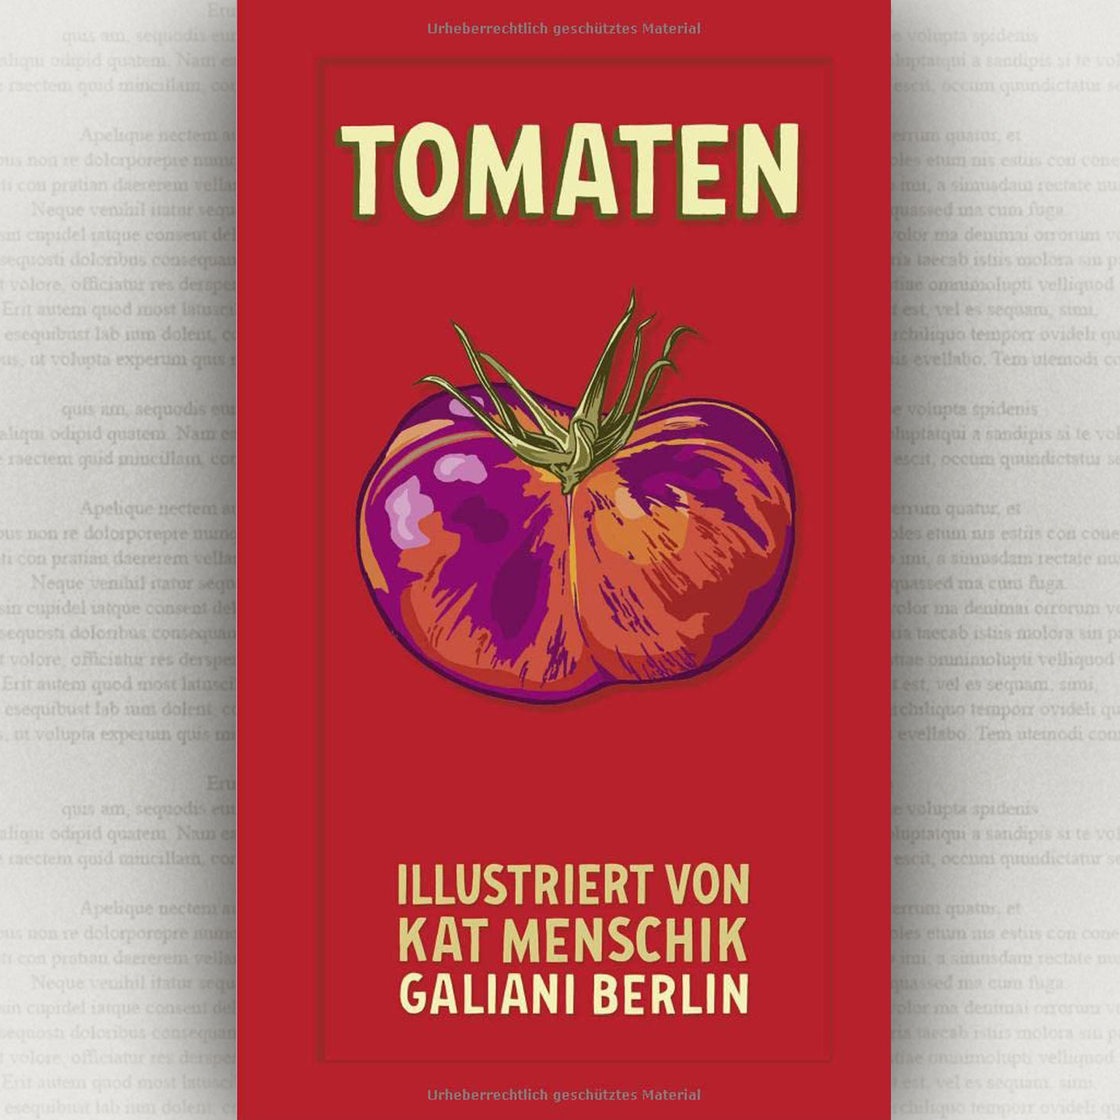 Buchcover "Tomaten", illustriert von Kat Menschik